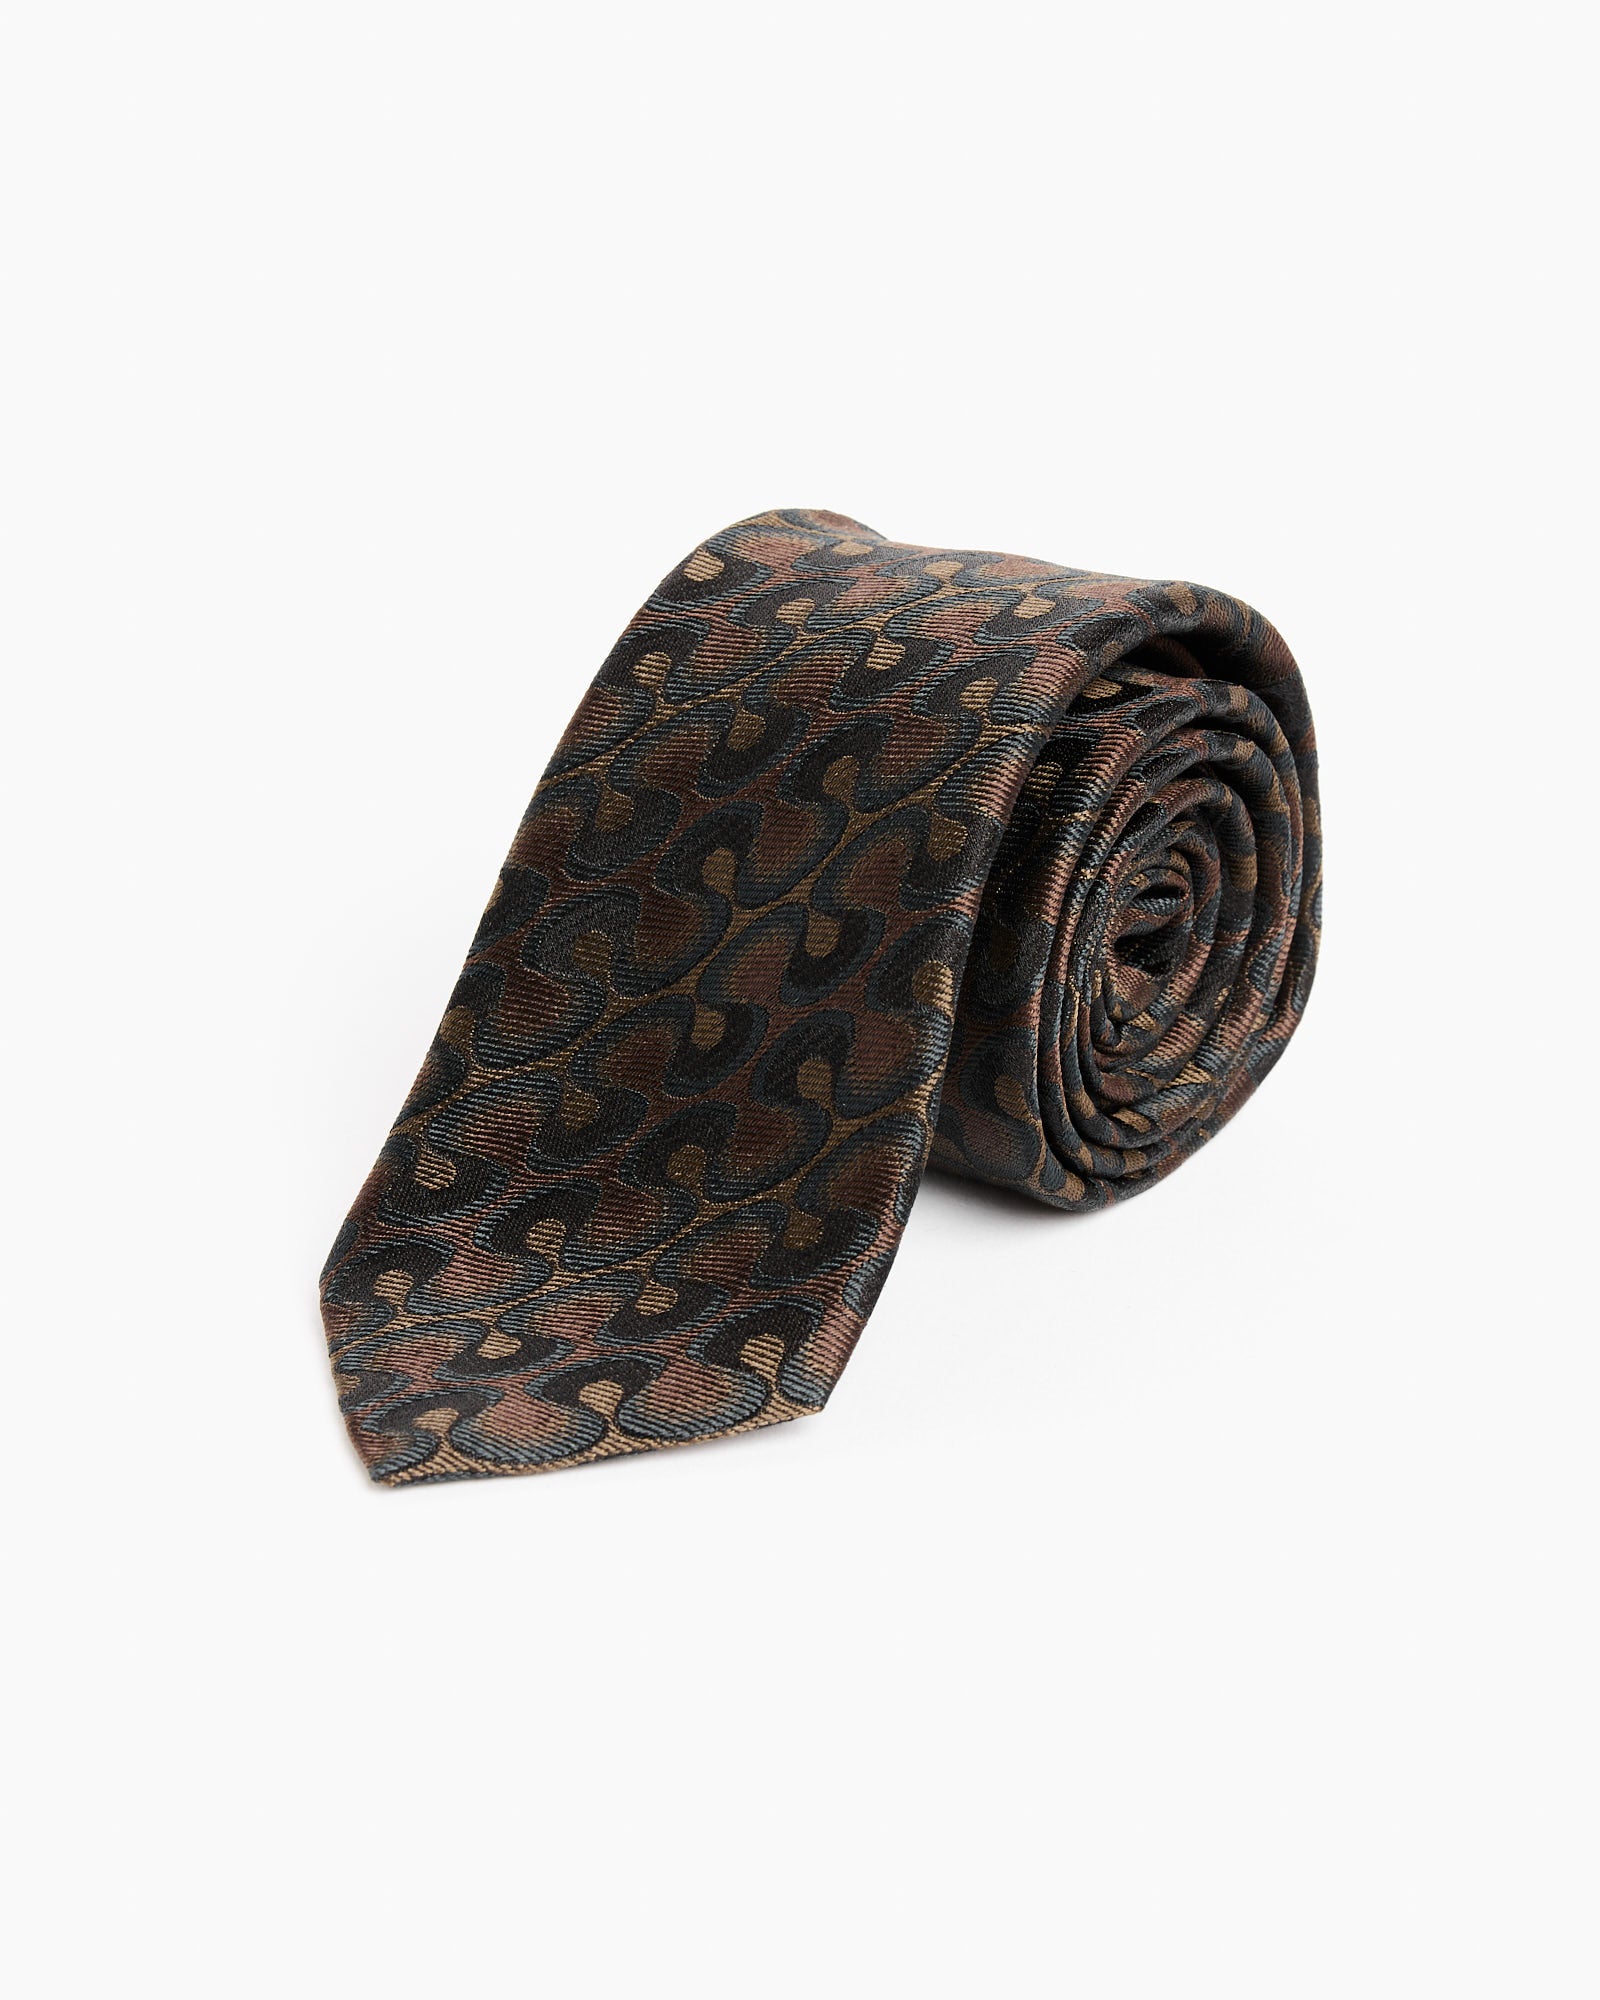 Jacquard Tie in Khaki